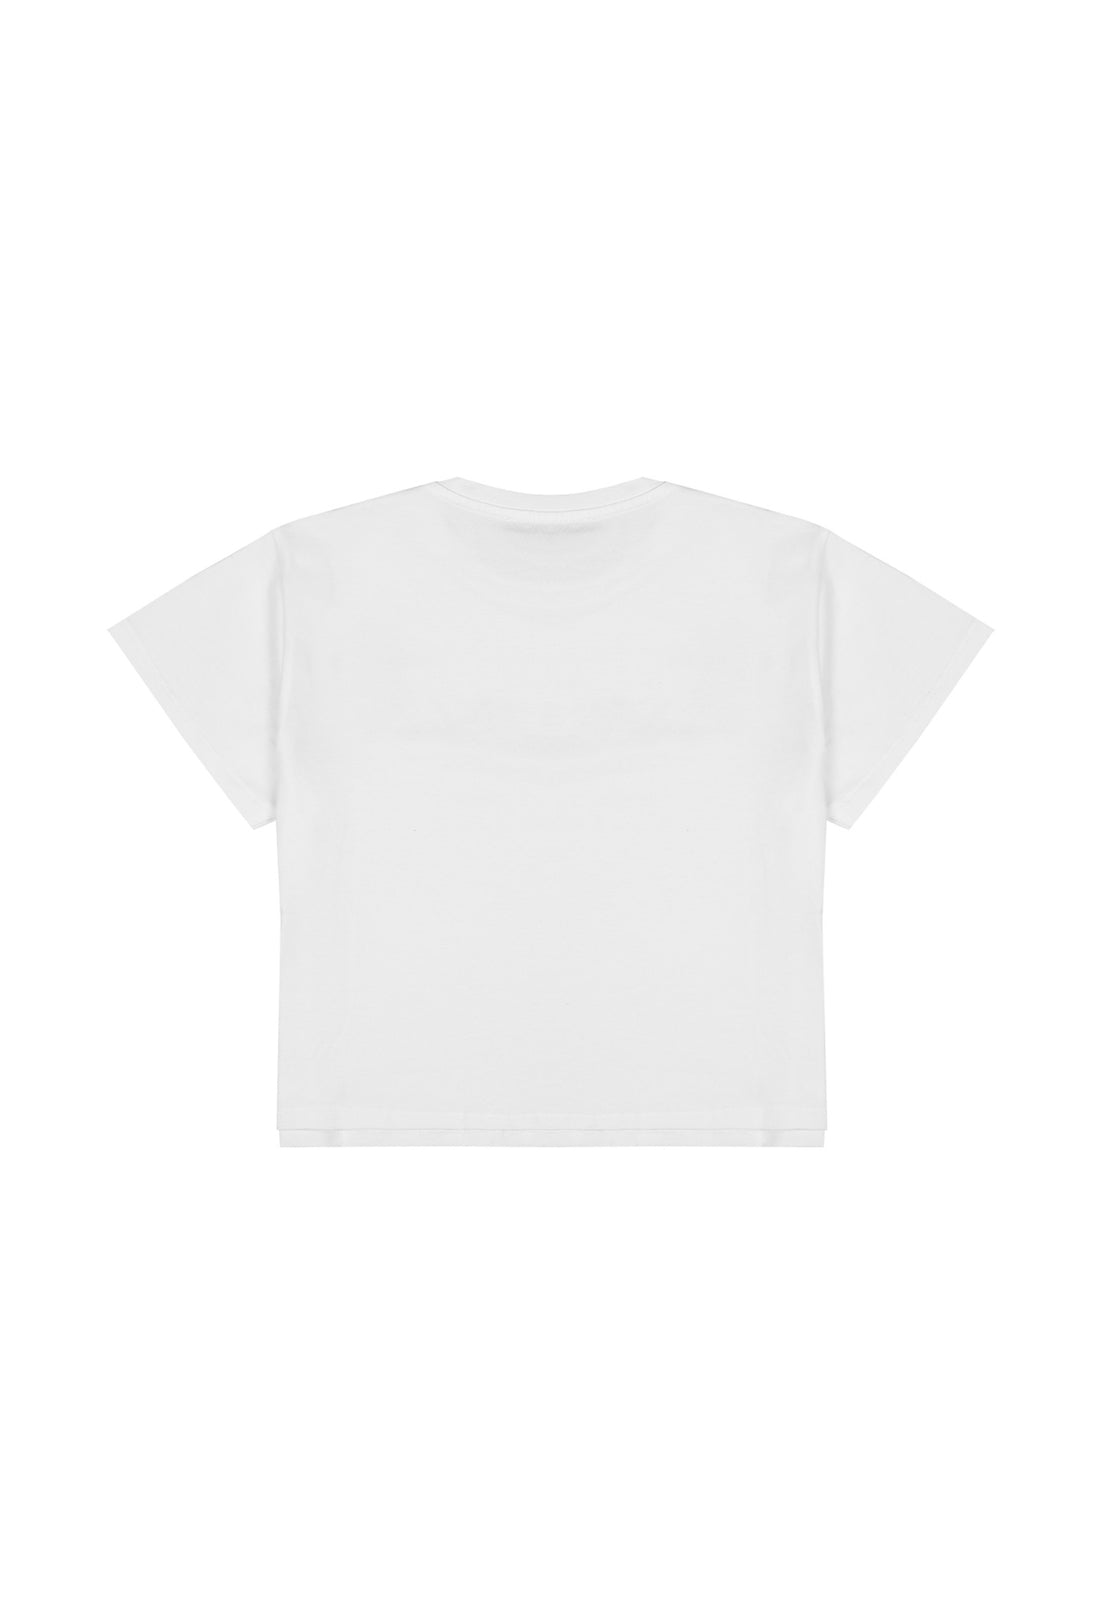 t-shirt materiał biały łączony MISS BLUMA MISS BLUMARINE 123 063J50 123/91c